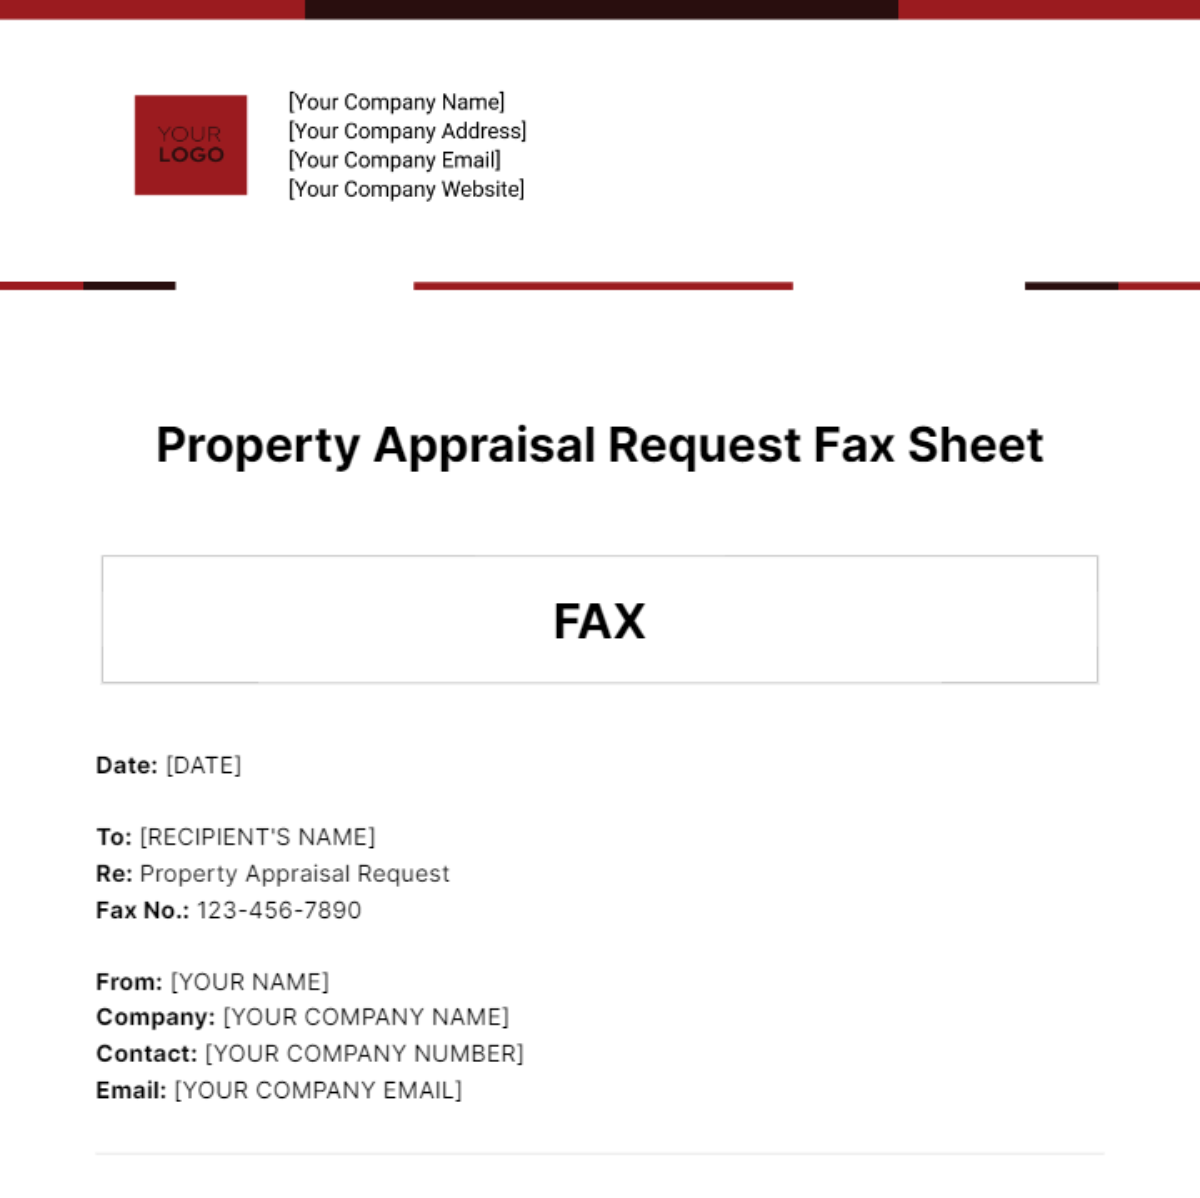 Property Appraisal Request Fax Sheet Template